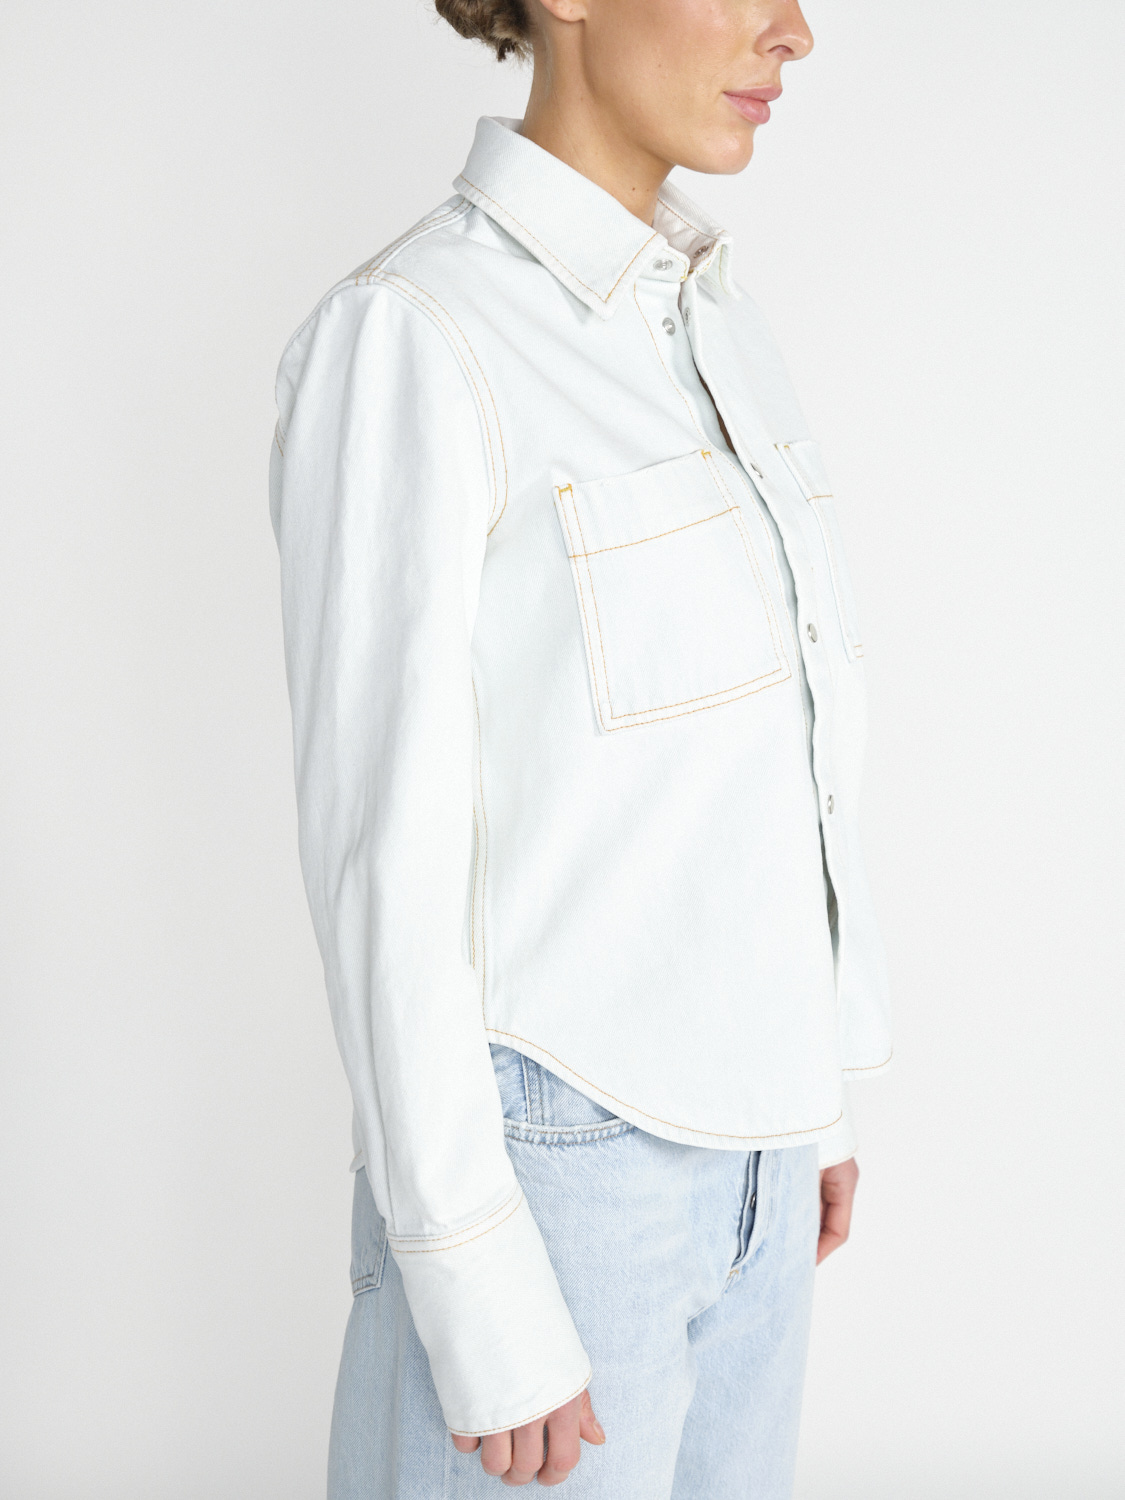 Darkpark Glenn - Cotton denim shirt  white XS/S